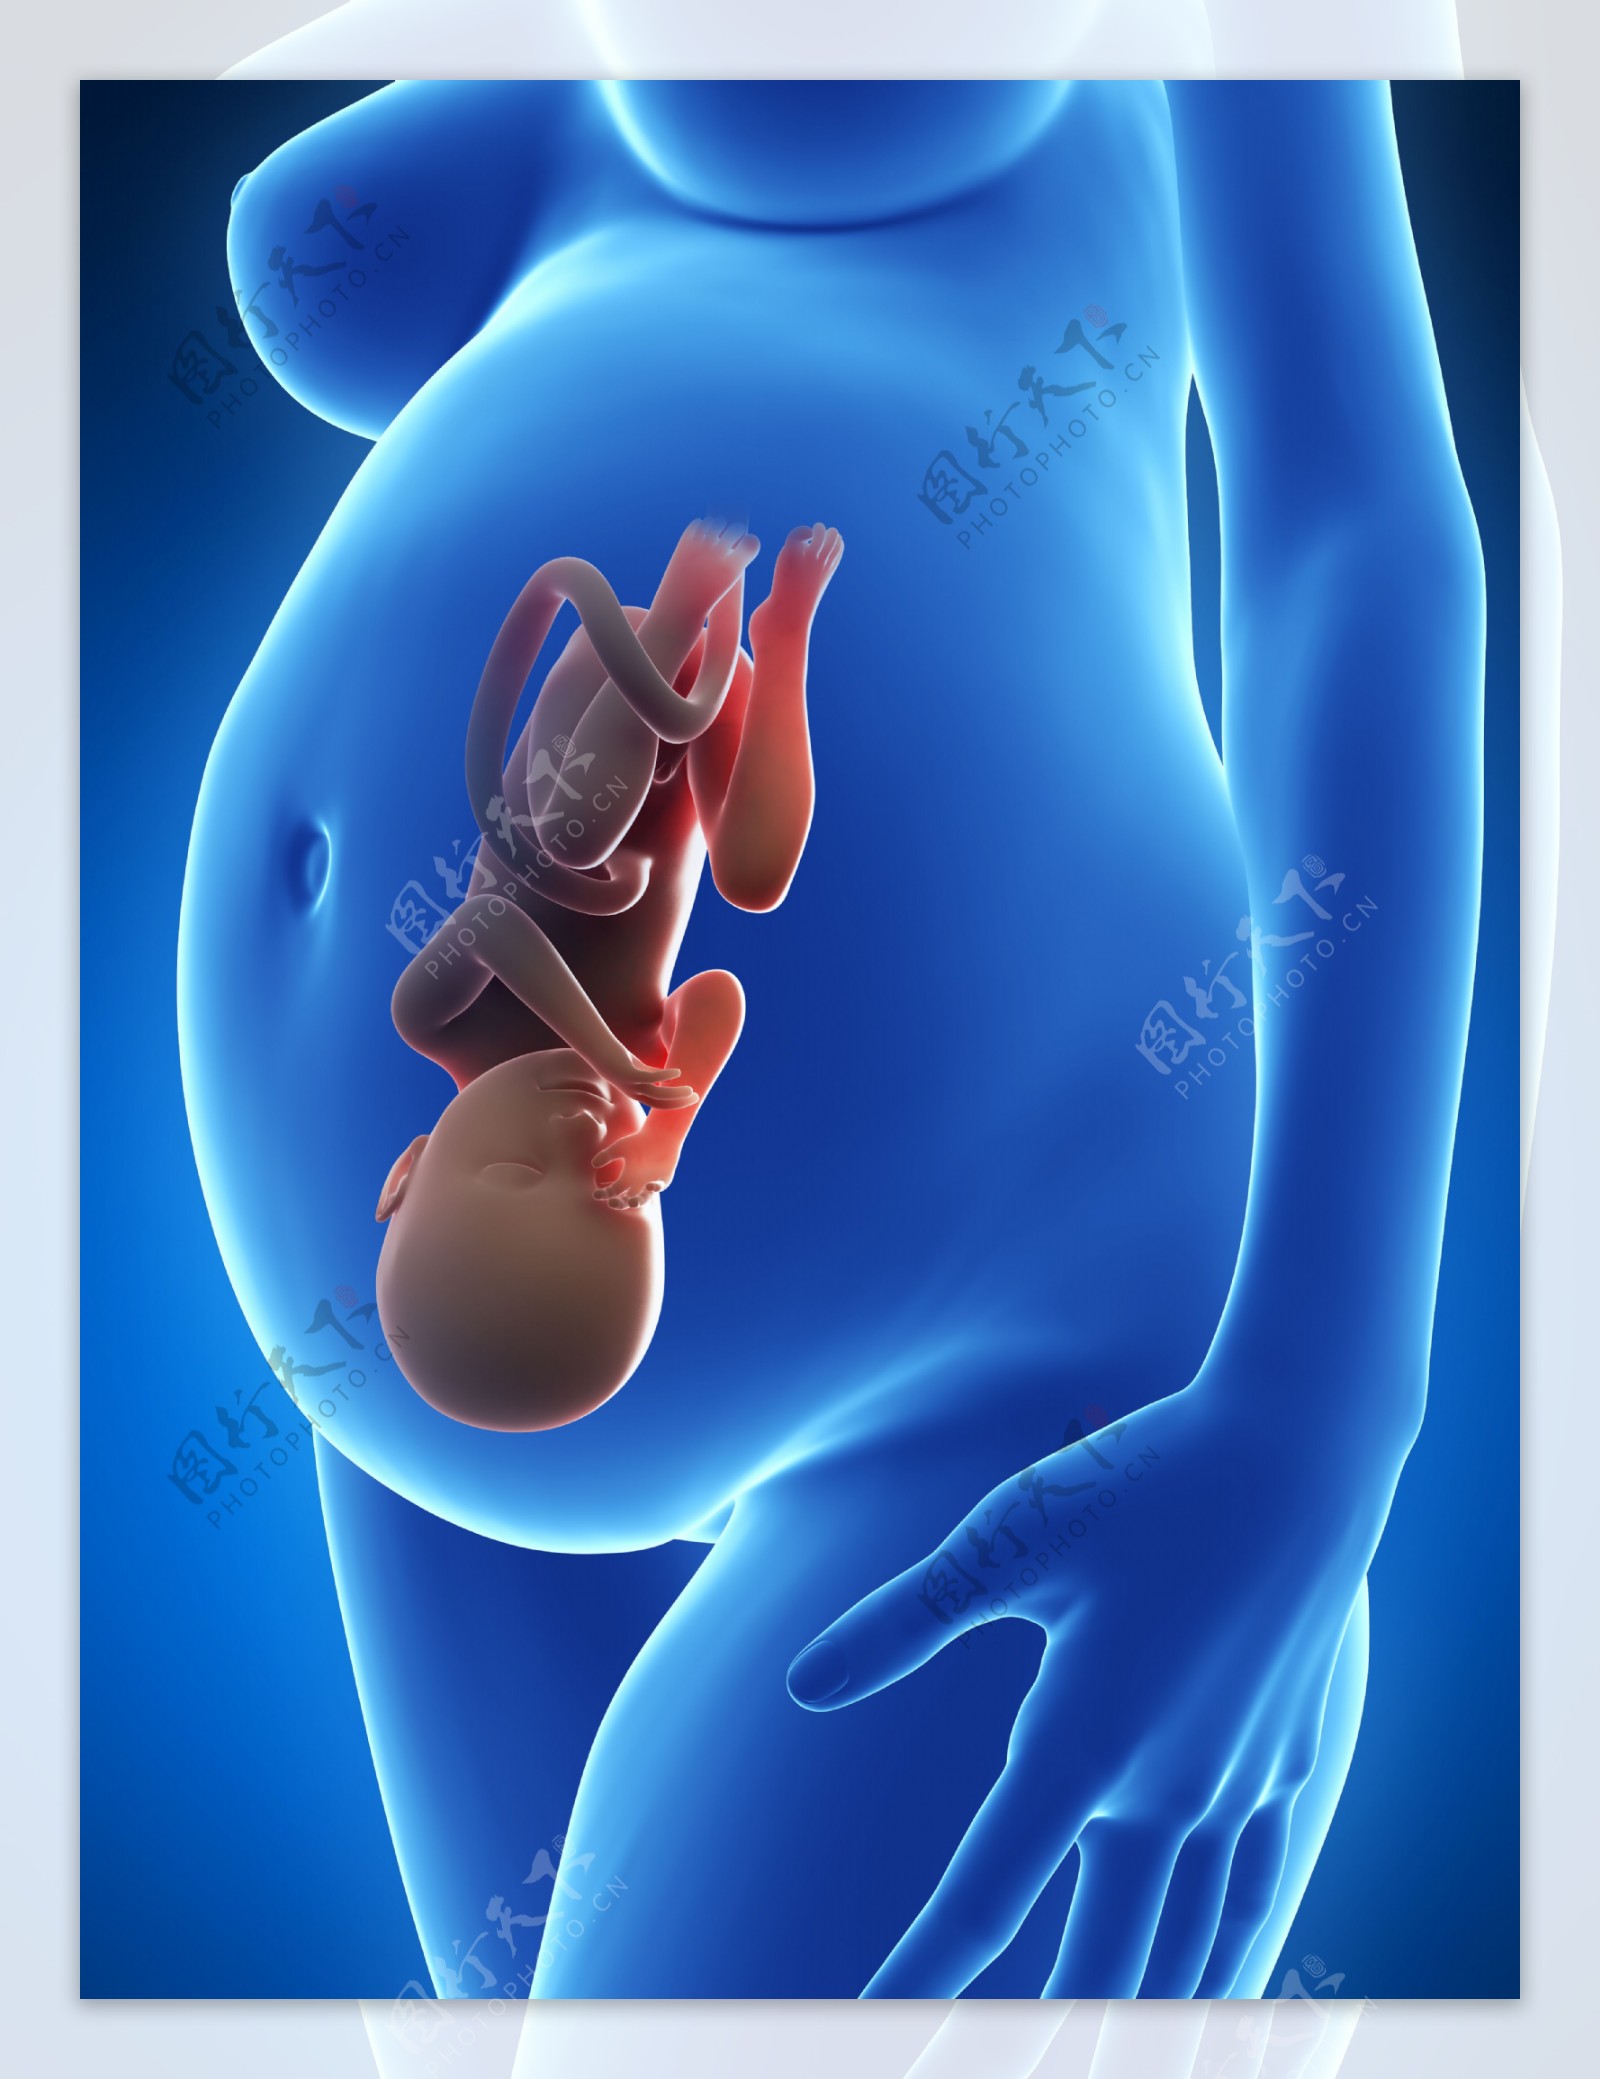 肚中头部向下的胎儿图片